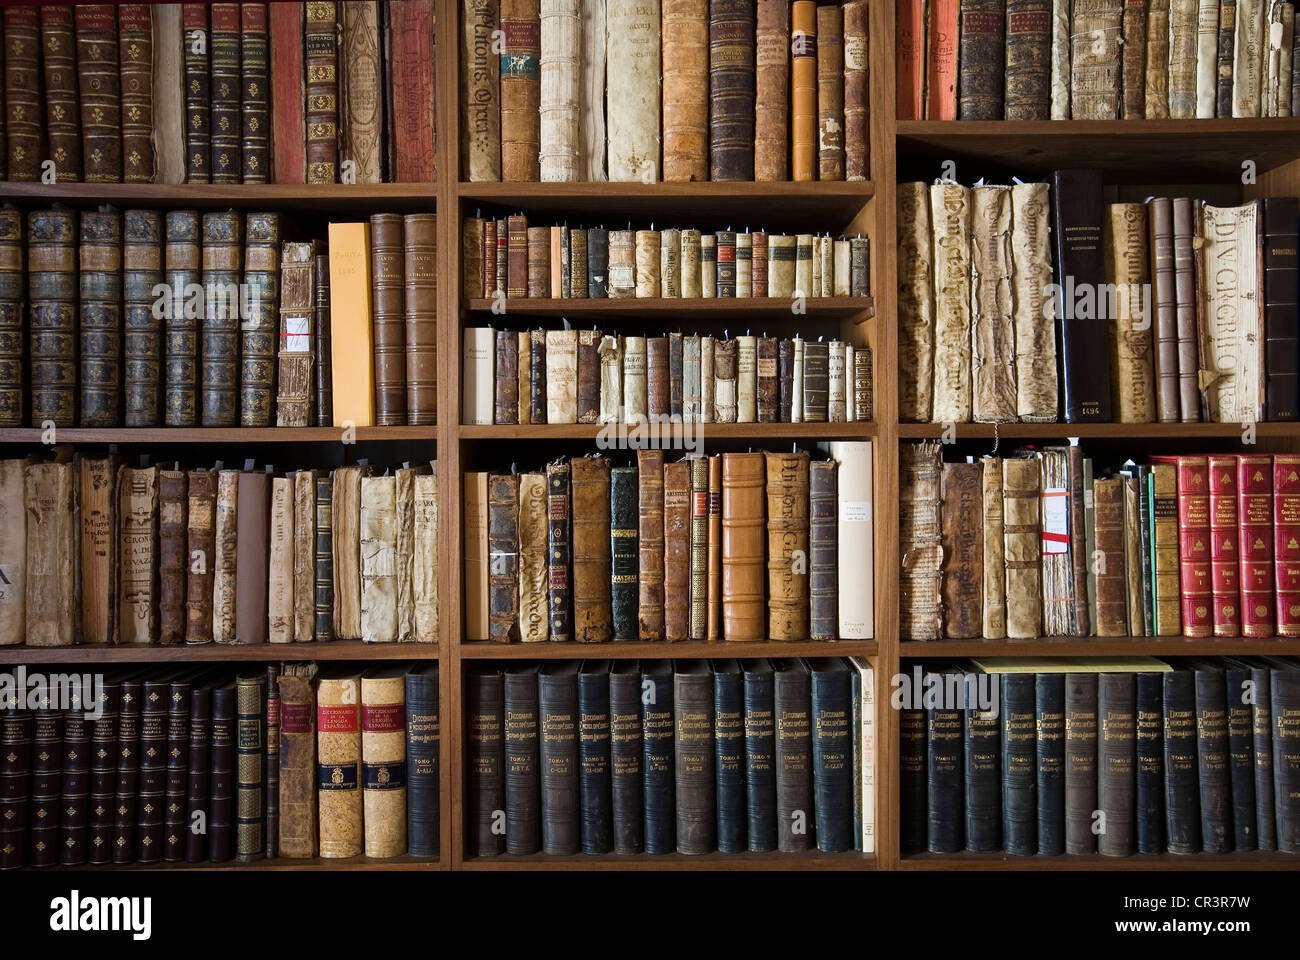 Page library. Полка для книг. Стеллаж для книг. Стеллажи для книг в библиотеку. Старый стеллаж с книгами.